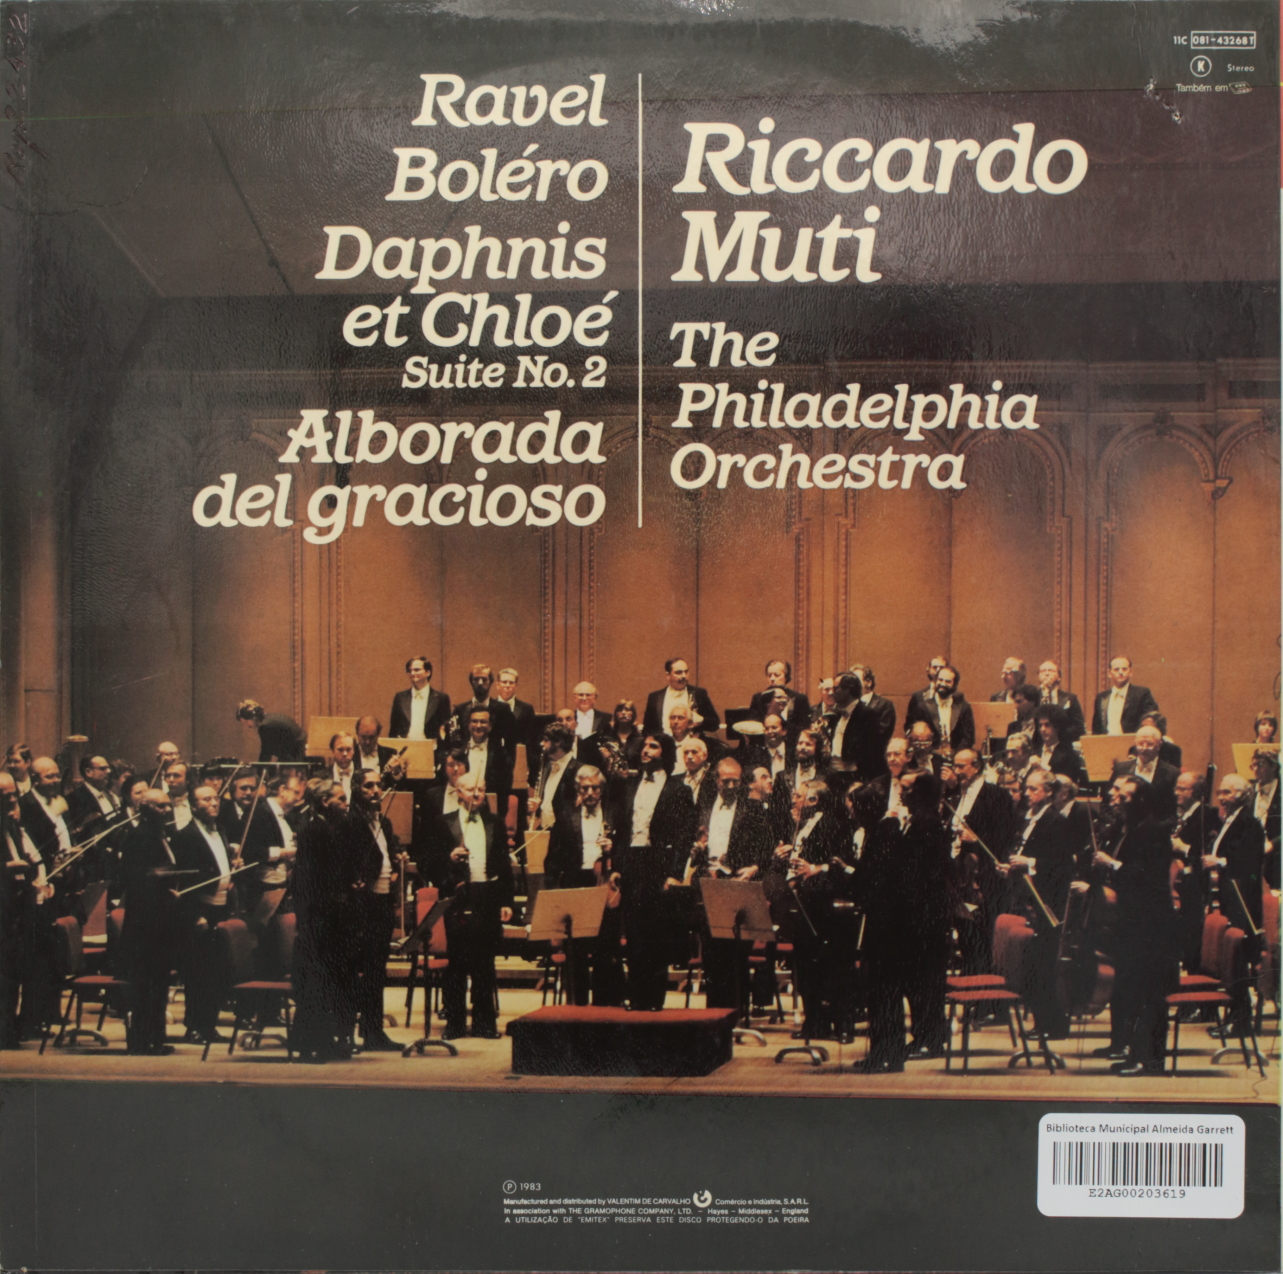 Ravel: Bolero; Daphnis et Chloé - Suite Nº 2; Alborada del gracioso